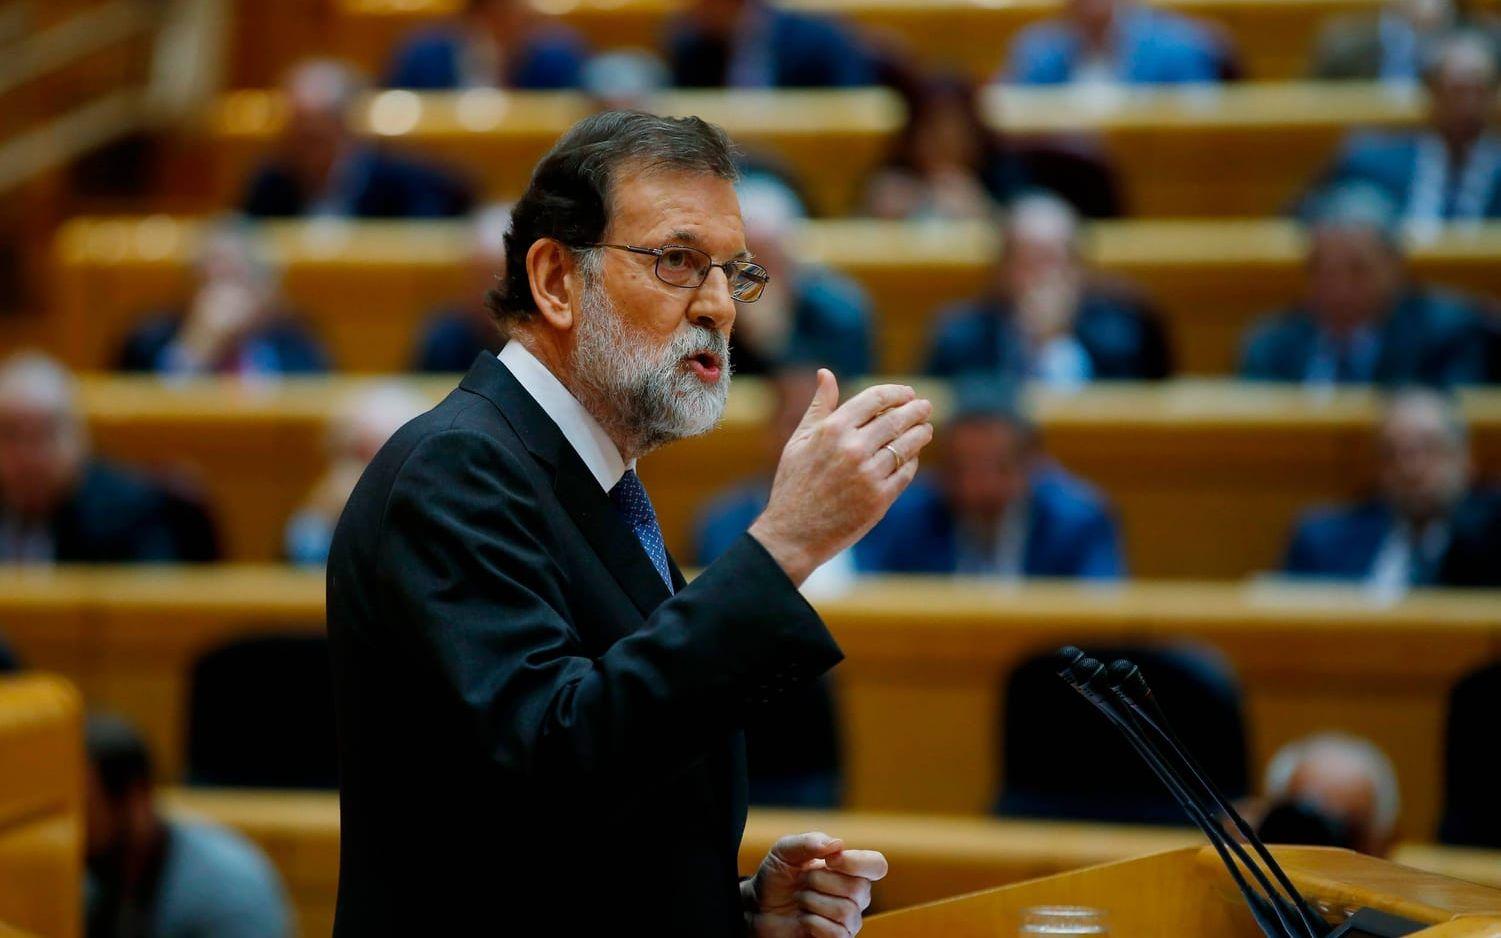 Spaniens premiärminister Mariono Rajoy har under de senaste månaderna fått lägga mycket kraft på Kataloniens självständighetskamp. Frågan är långt ifrån utagerad. I Barcelona i helgen demonstrerade någonstans mellan 750 000 och två miljoner för självständighet. Antalet deltagare går isär beroende på vem man frågar. Dessutom finns det andra problem för Rajoy att vara bekymrad över. Han pekas ut i en mutskandal av chefen för UDEF, det spanska civilgardets korruptionsenhet. Enligt uppgifterna ska båda Mariano Rajoy och andra ledare inom hans parti Partida Popular tagit emot mutor. Bild: AP Photo/Paul White